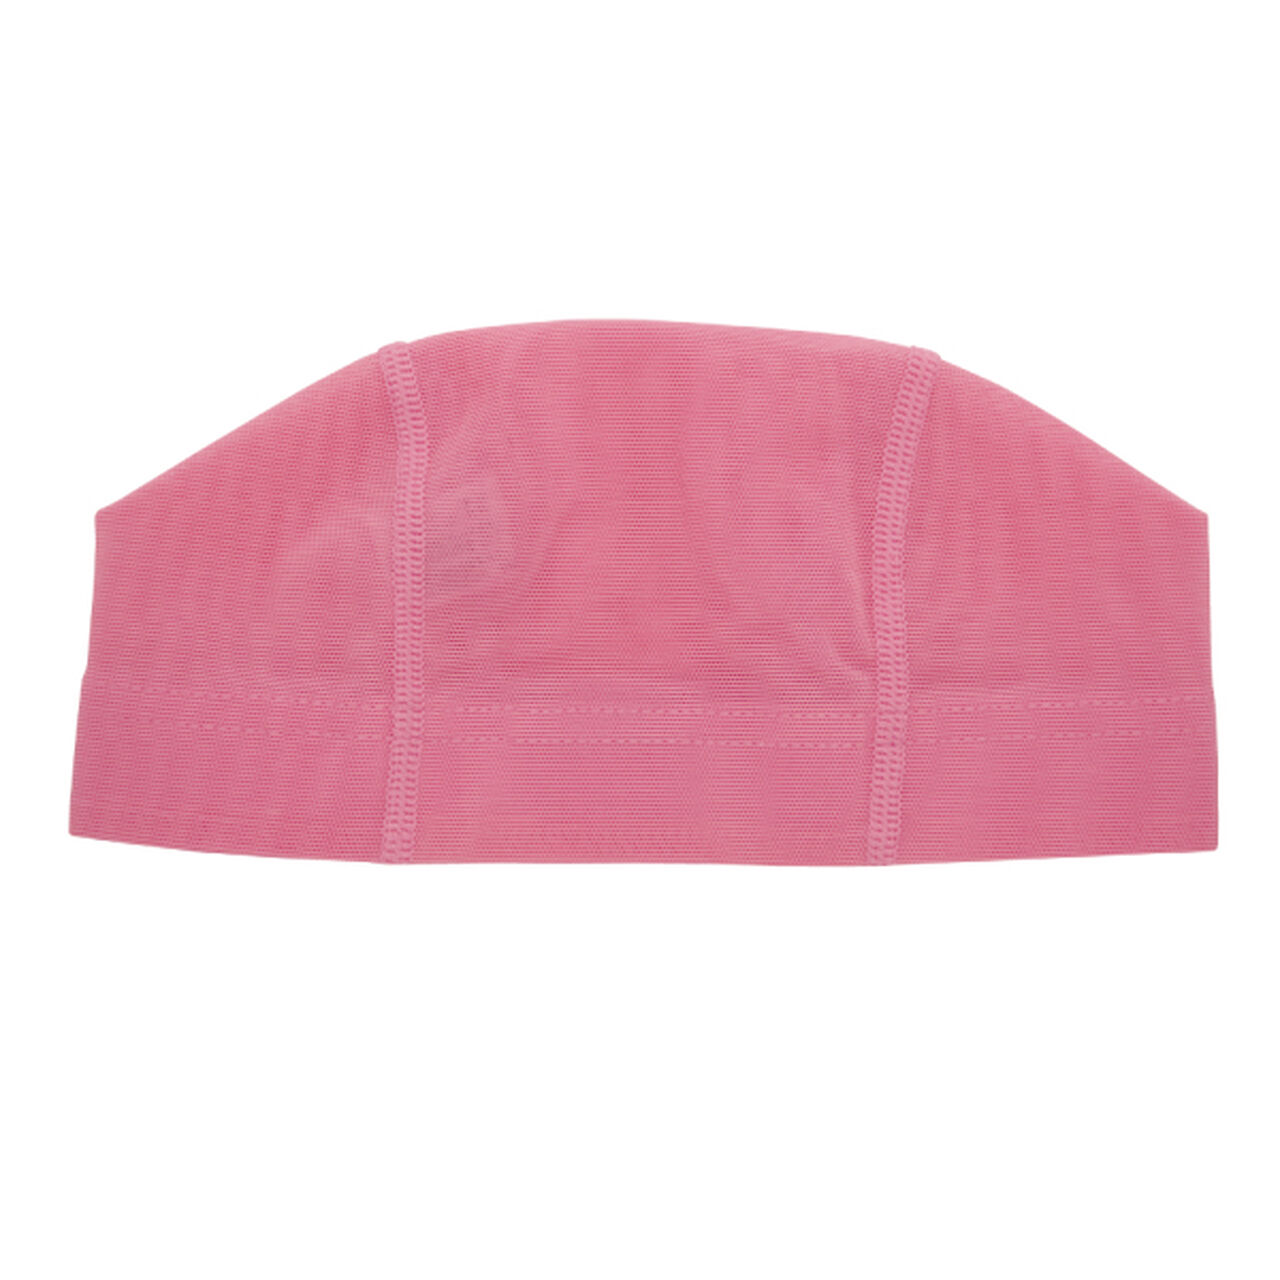 SA-61 L Pink mesh swim cap L size,Opt3, large image number 0